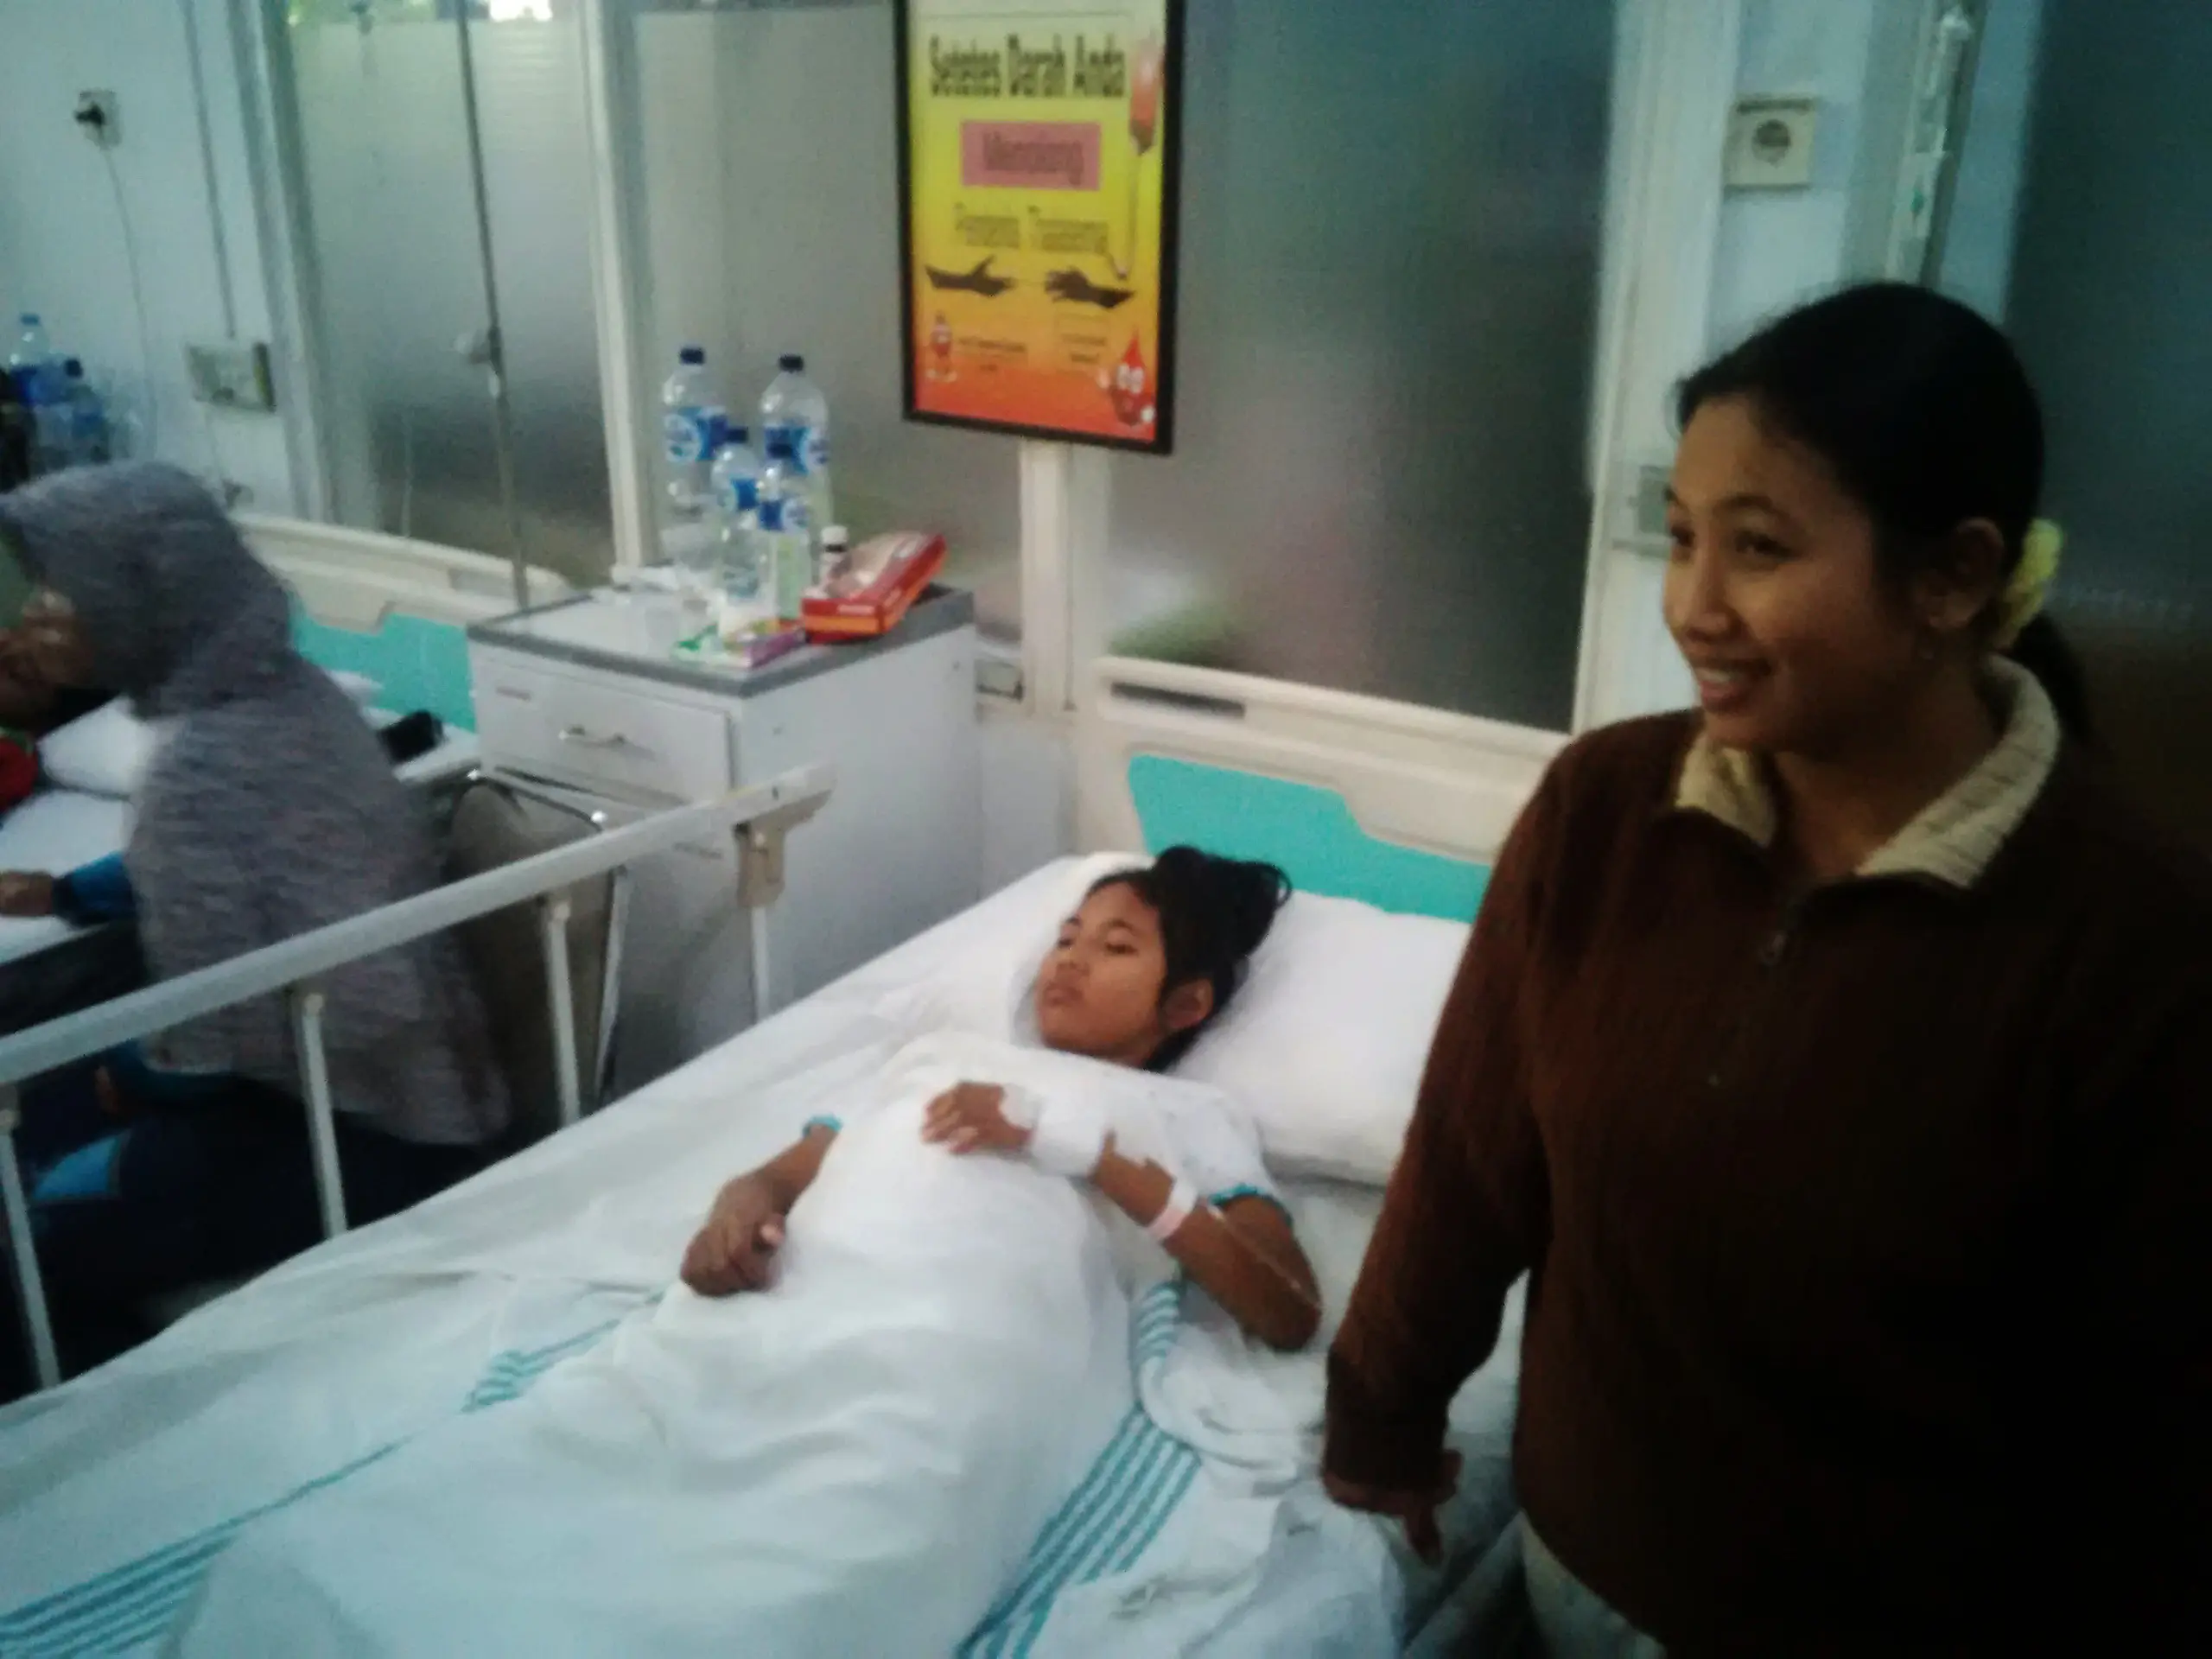 NA, siswi SMP yang lumpuh usai divaksin MR, ditemani ibunya saat menjalani perawatan di RSUP dr Kariyadi, Kota Semarang, Jateng. (Liputan6.com/Felek Wahyu)